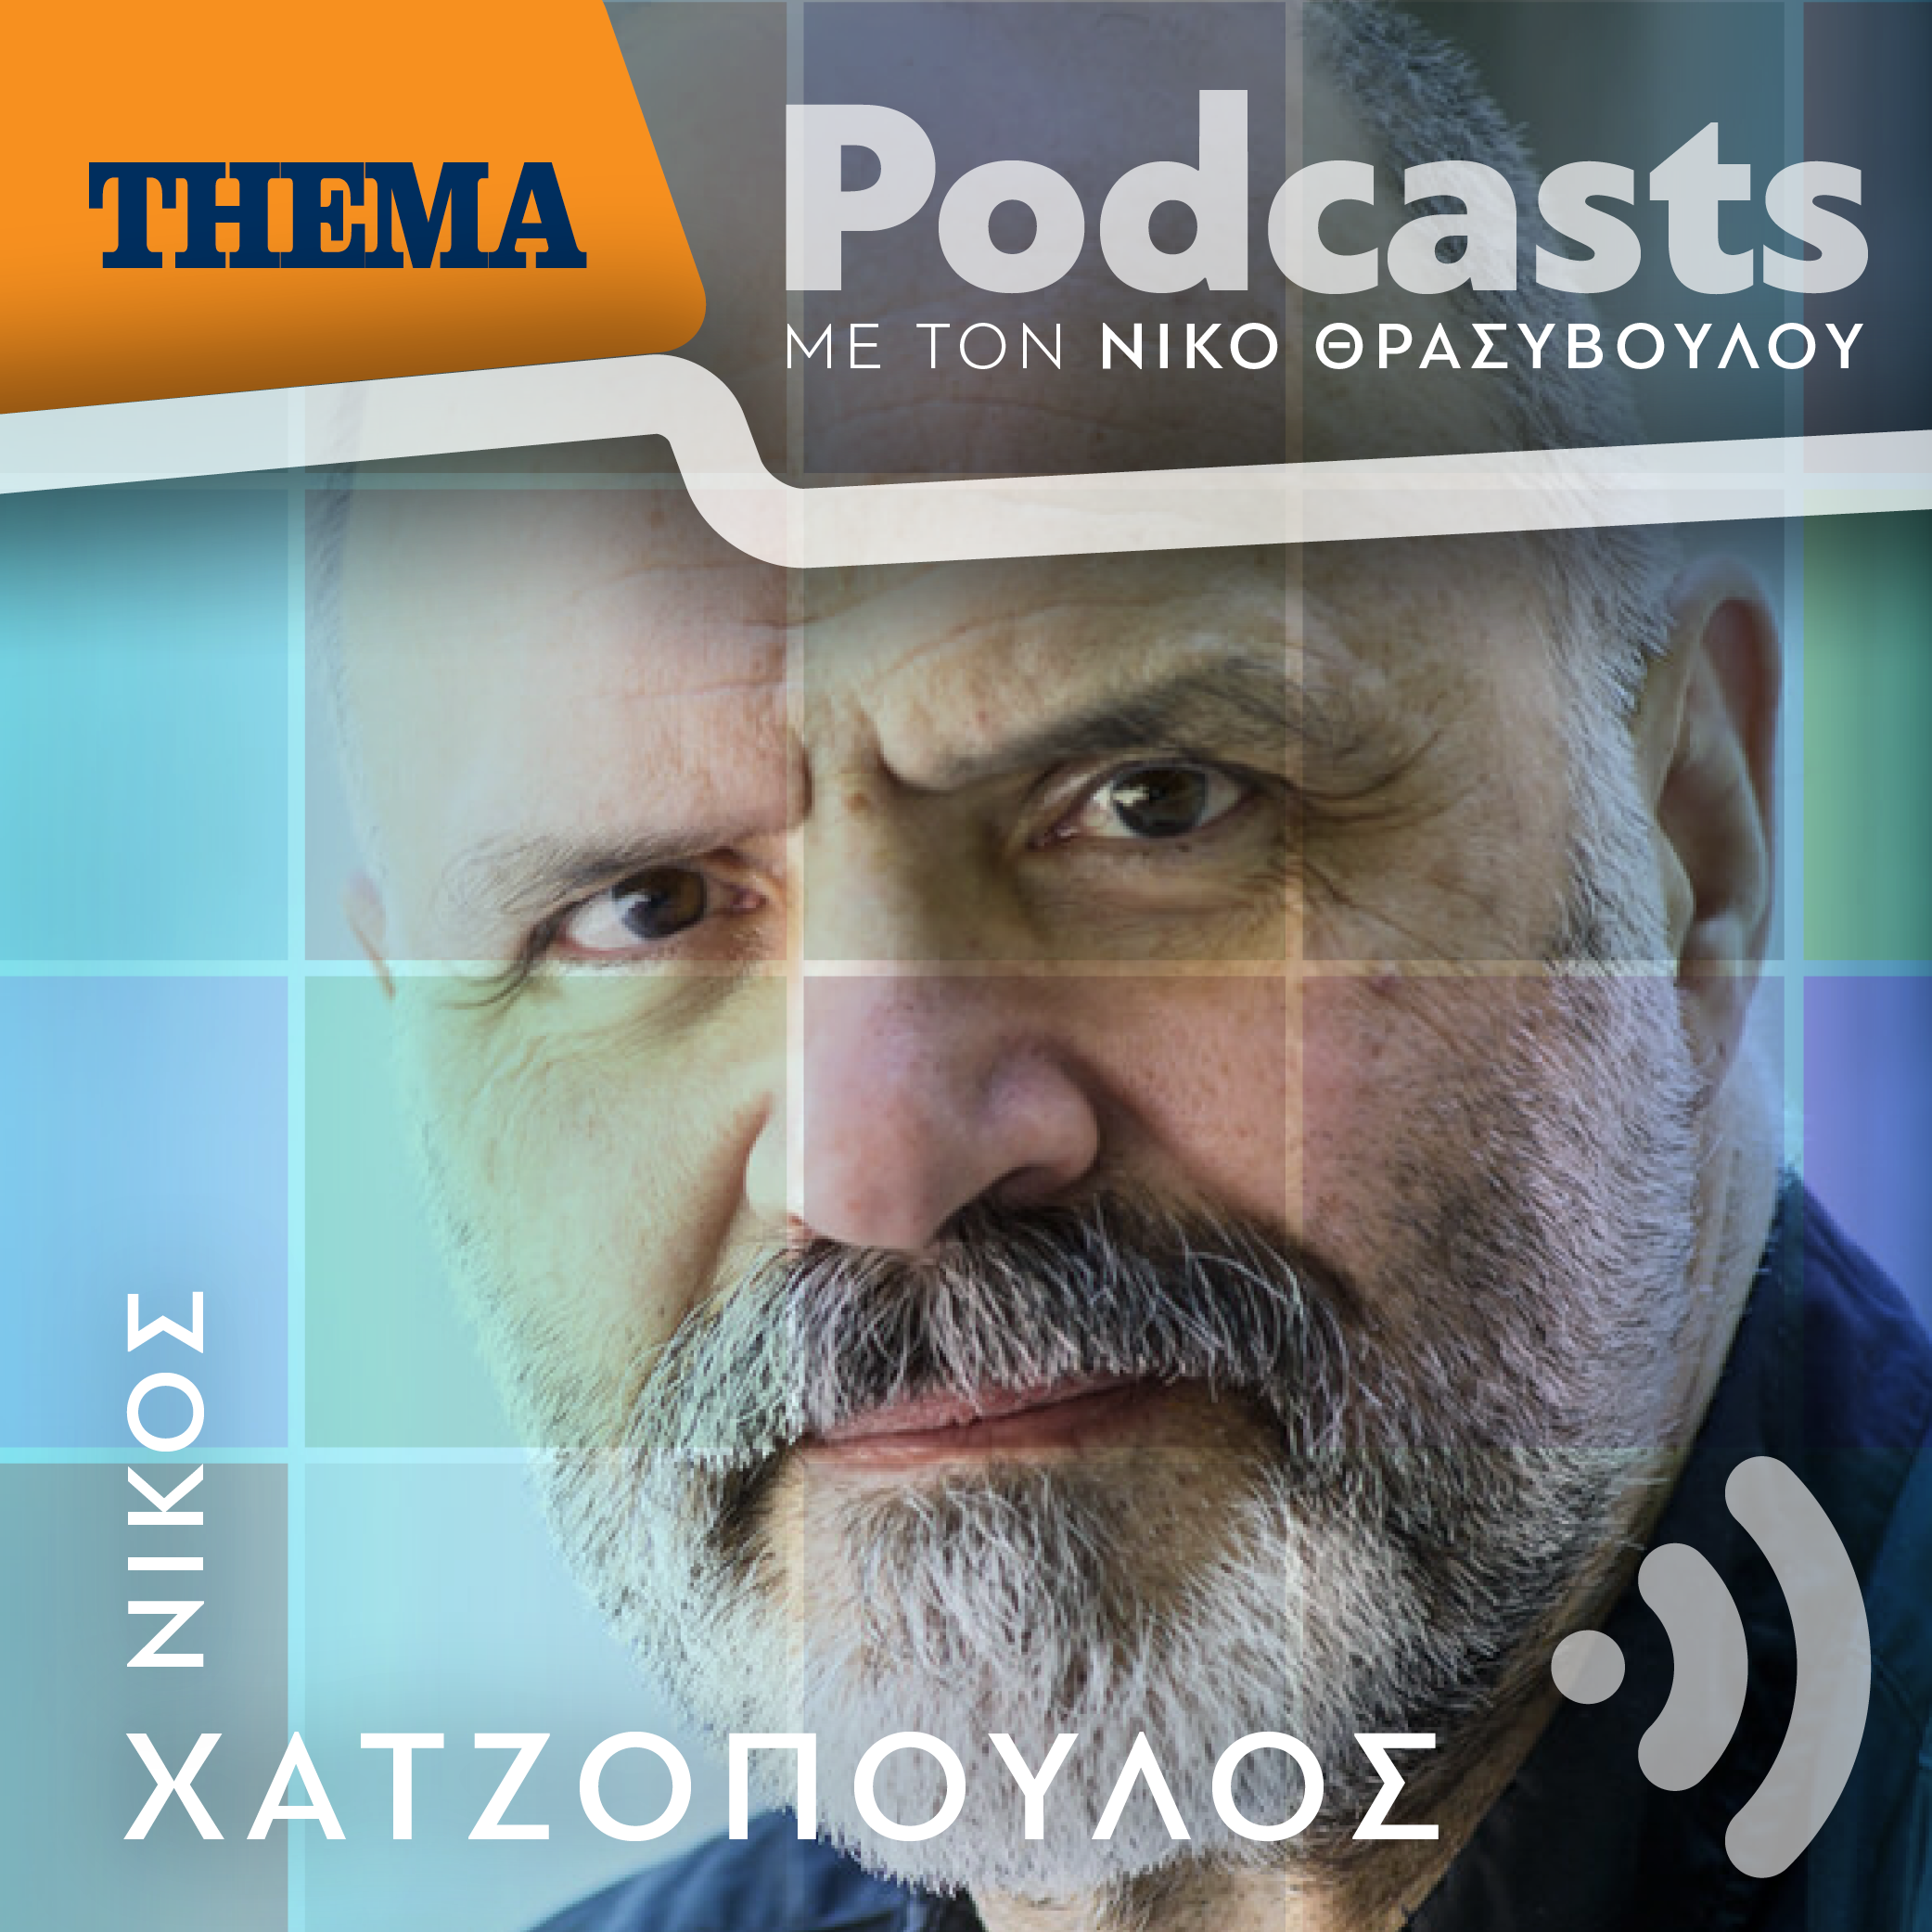 Νίκος Χατζόπουλος: «Βρίσκεται σε αδιέξοδο το θέμα των καλλιτεχνών, δεν έχει γίνει καμμιά κίνηση της Πολιτείας λόγω εκλογών»